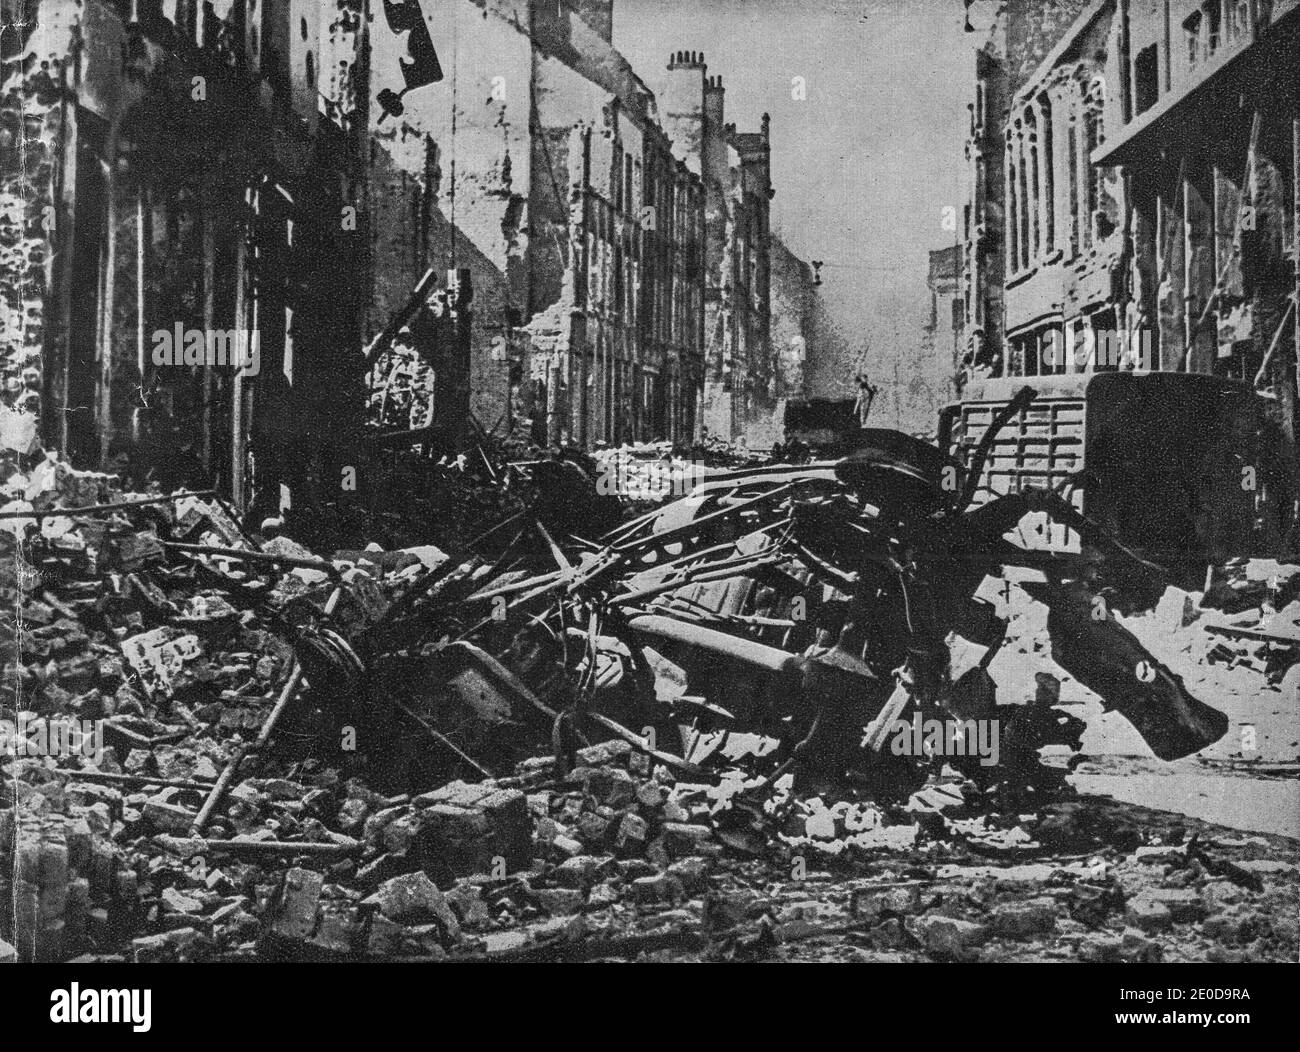 FRANCIA - anni '40: Strada e città distrutte ignote sul nord della Francia. Riproduzione dalla rivista fascista. Propaganda nazista. Foto Stock